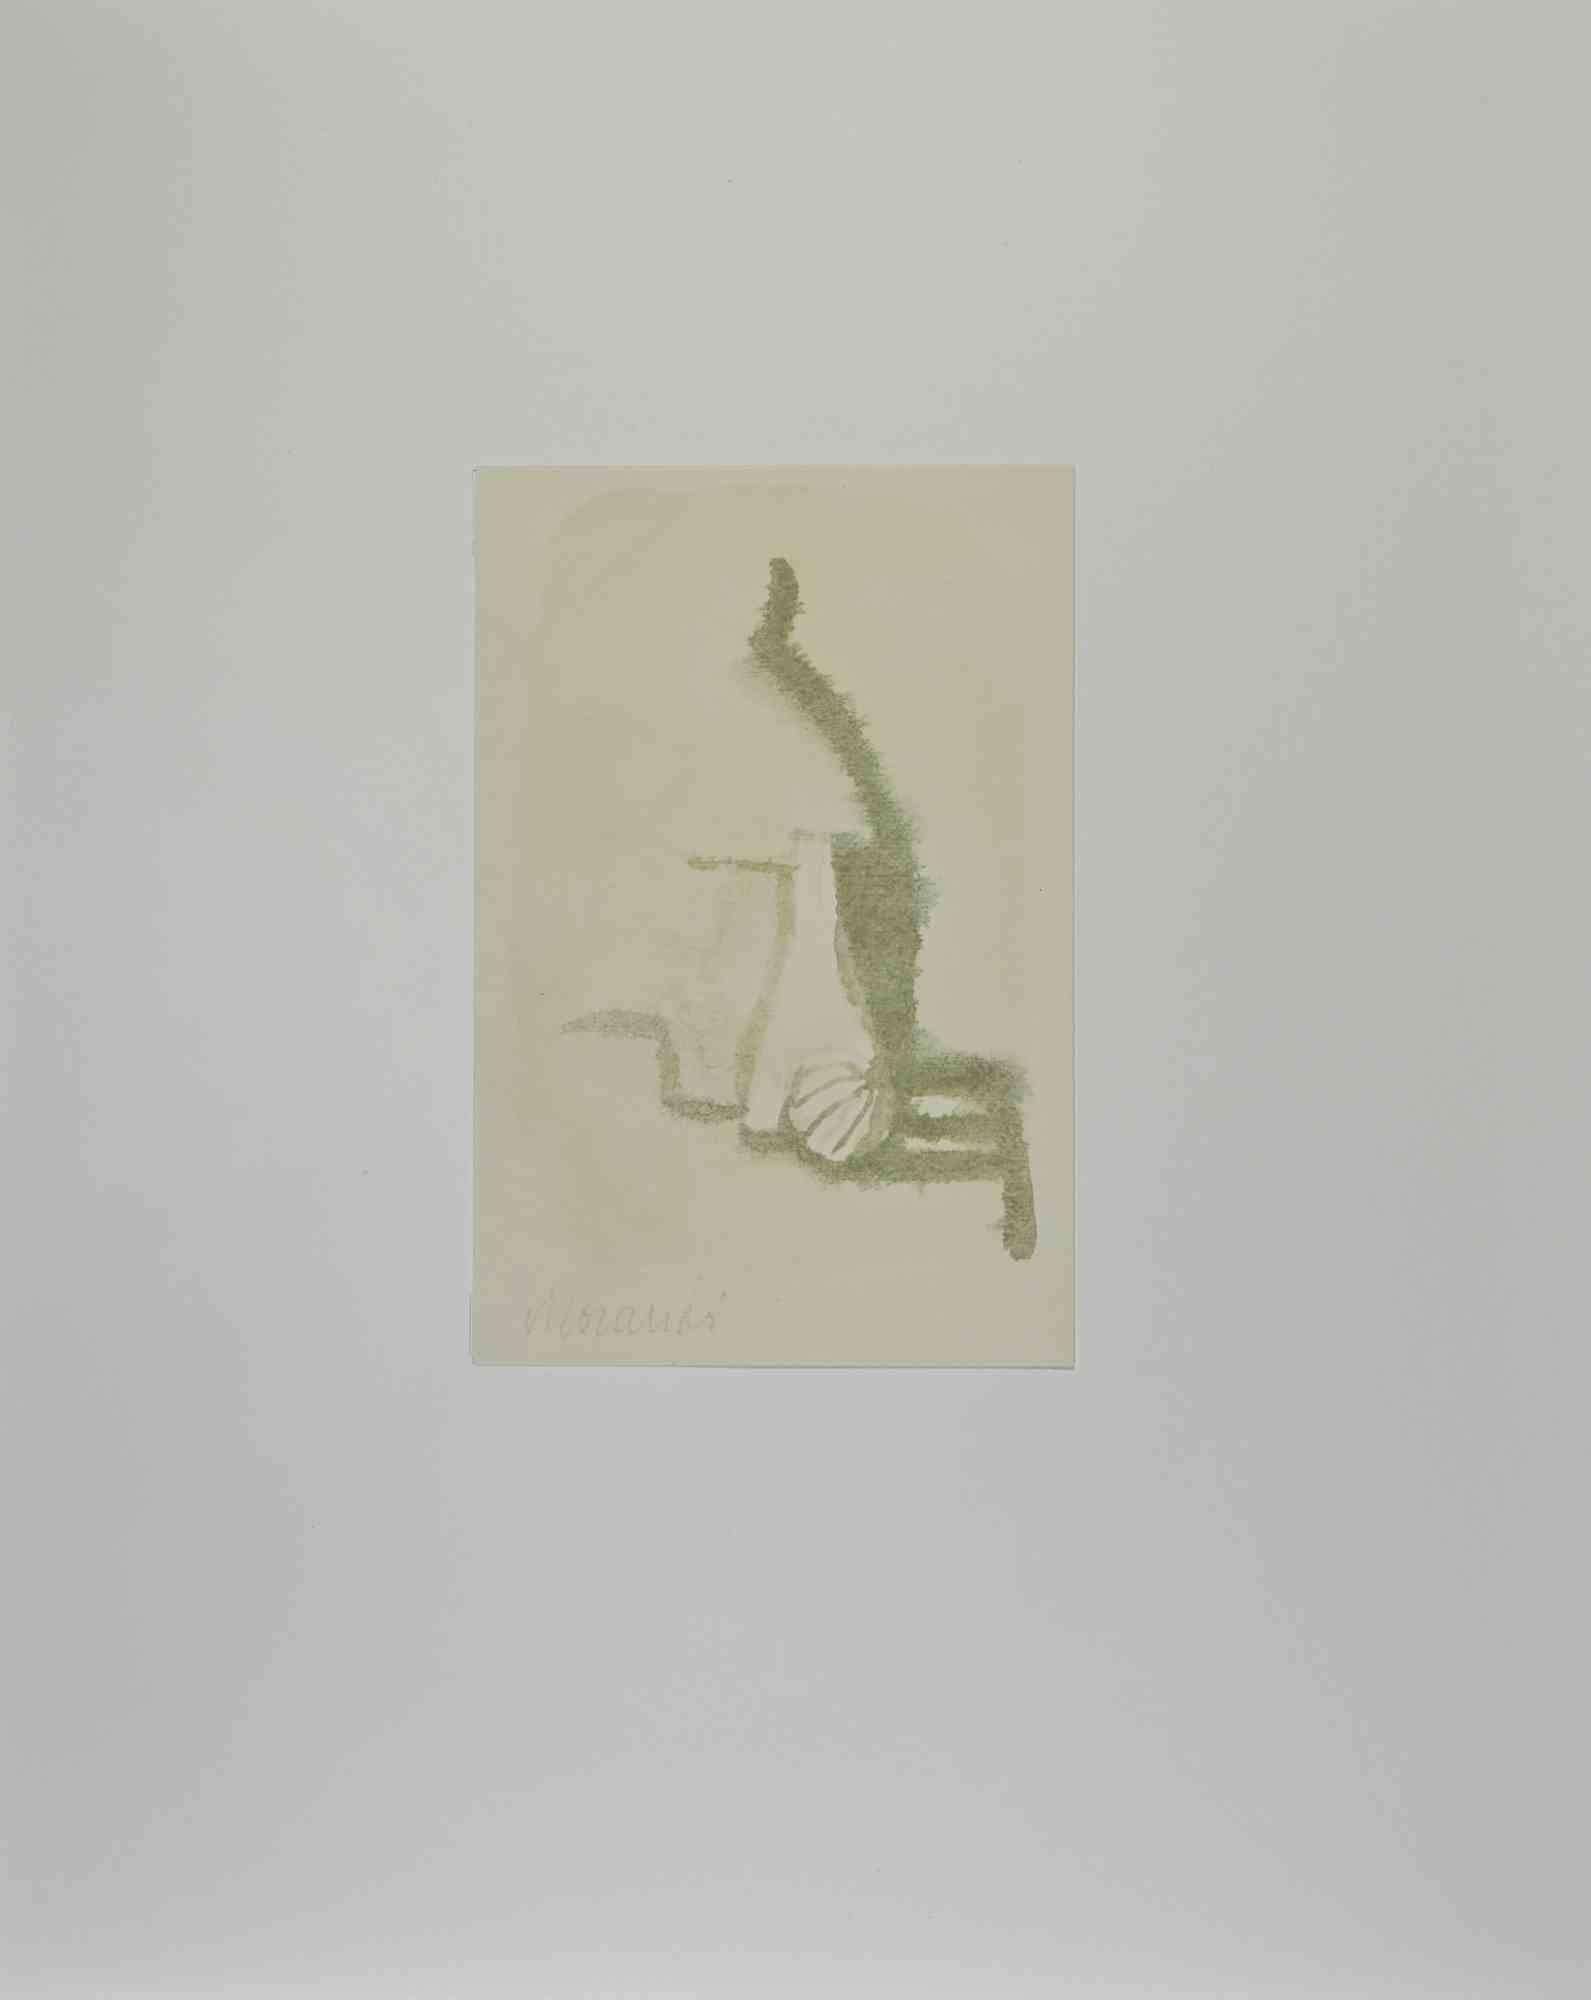 Das Stillleben ist ein Vintage-Offsetdruck, der das Originalaquarell von Giorgio Morandi reproduziert.

Die Signatur und das Datum des Künstlers sind perfekt auf der Platte wiedergegeben. Bildabmessungen: 17,5 x 28 cm

Aus dem Band "L'Opera grafica